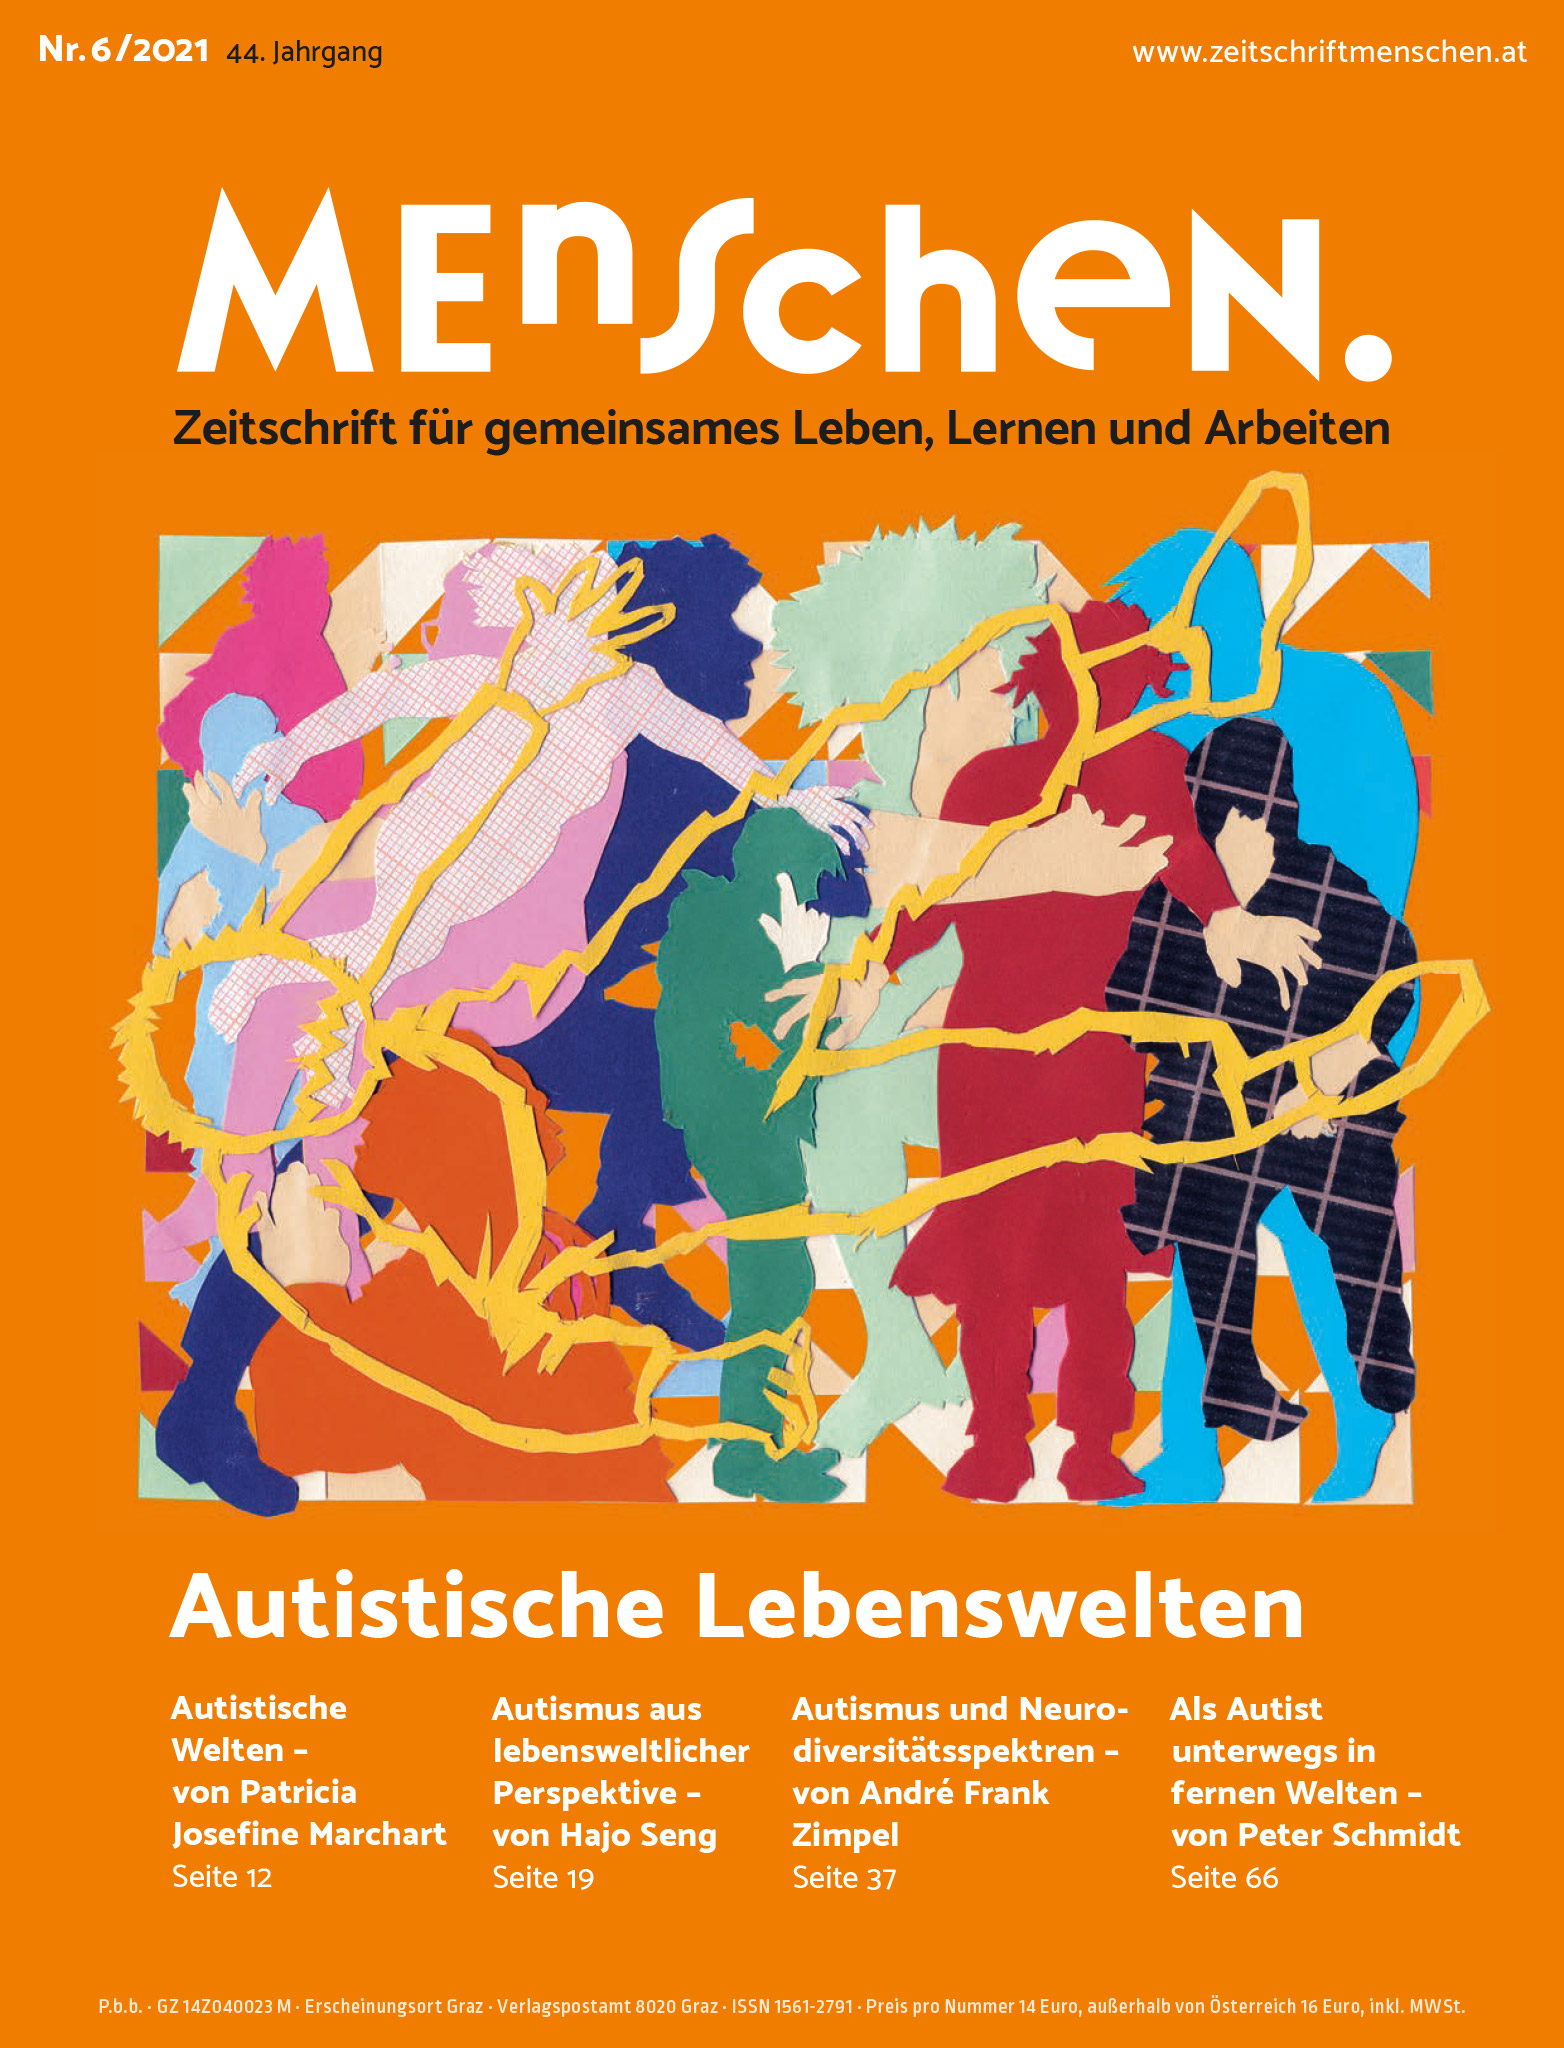 Titelbild der Zeitschrift BEHINDERTE MENSCHEN, Ausgabe 6/2021 "Autistische Lebenswelten"